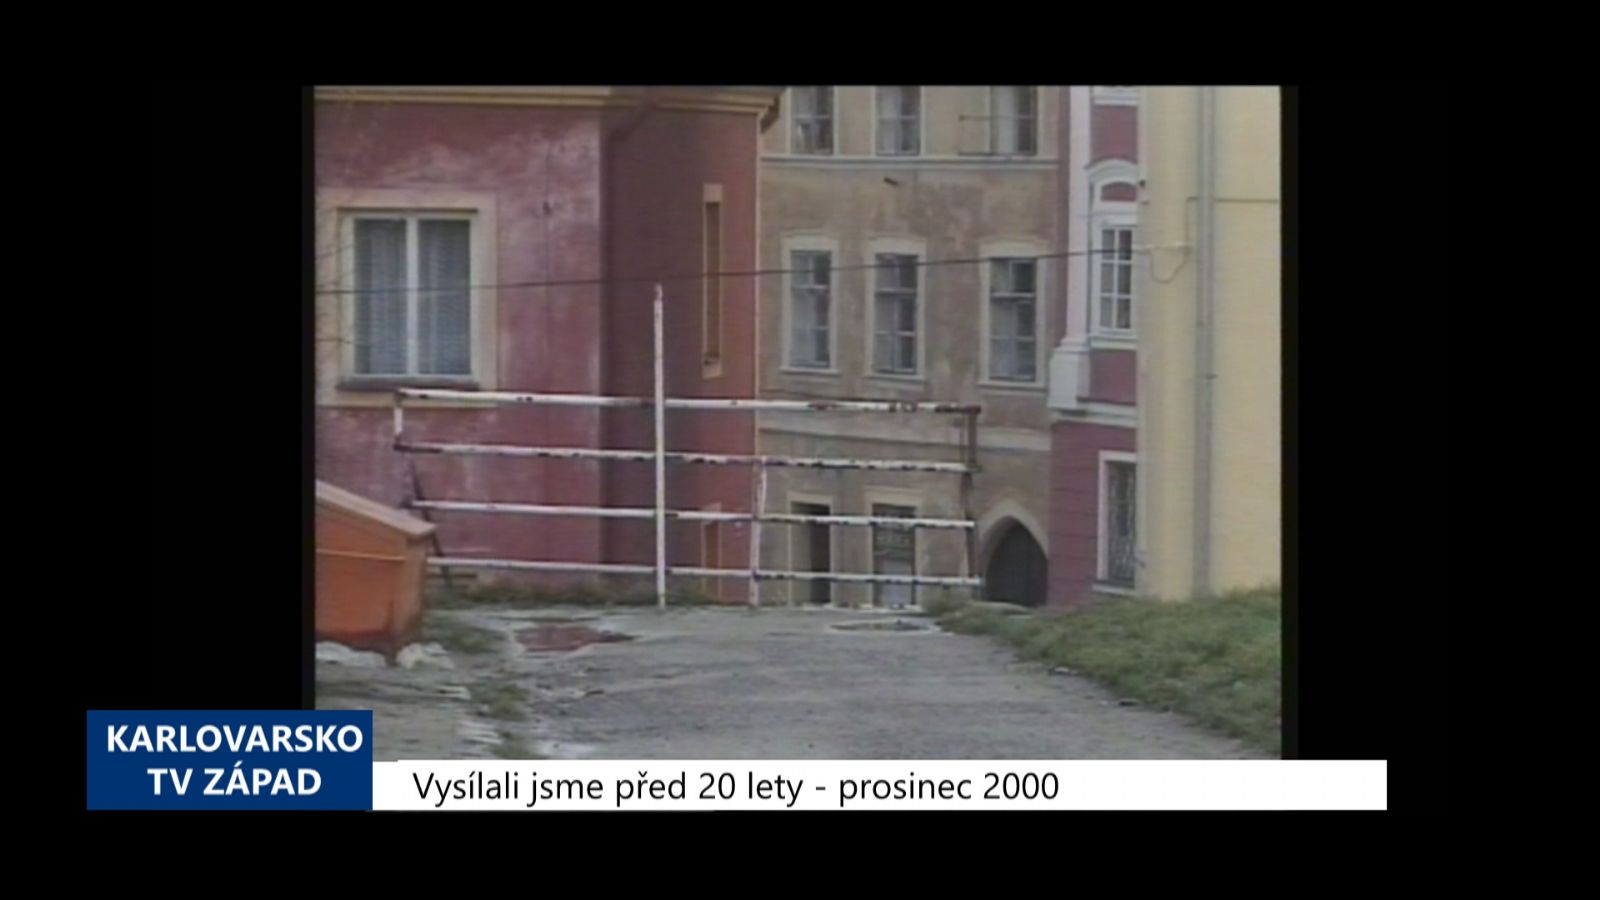 2000 – Cheb: Nová koncepce údržby historického jádra města (TV Západ)